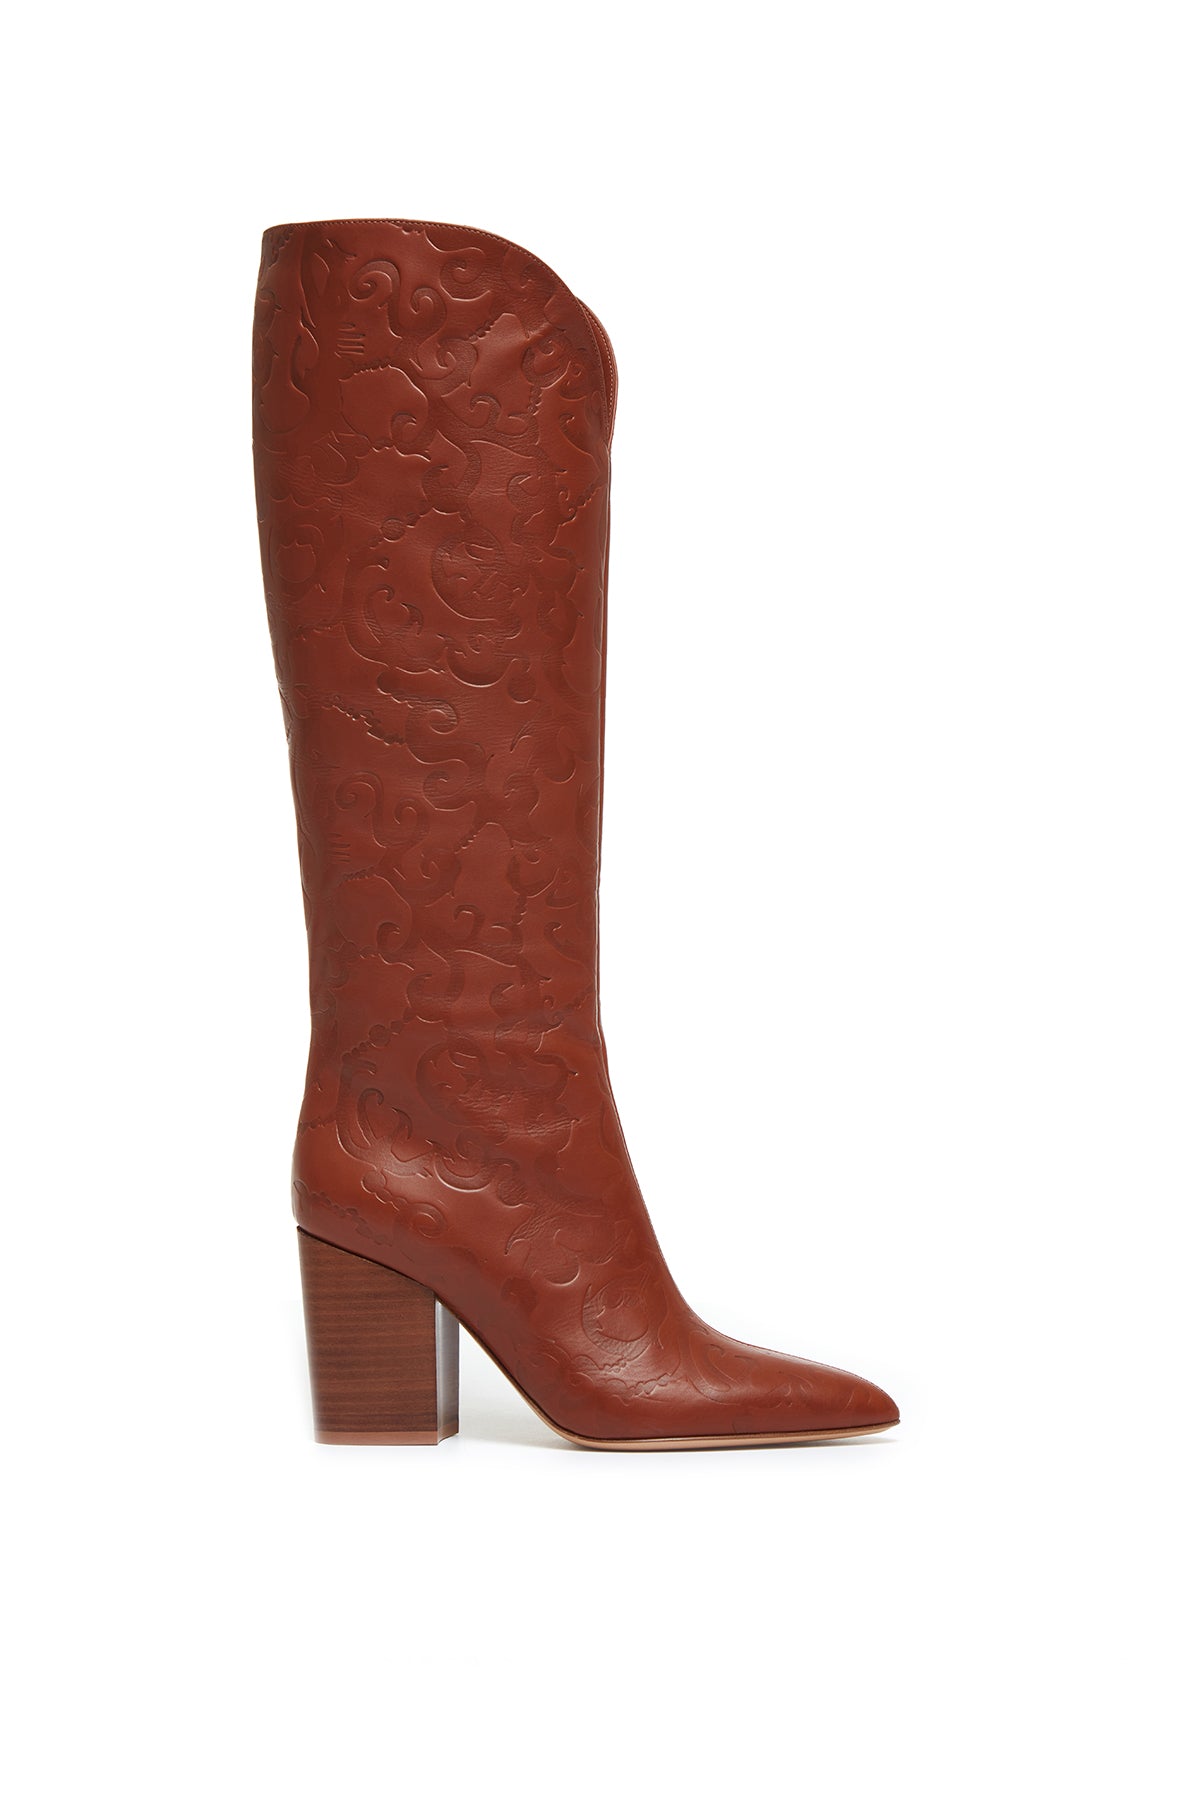 Debossed Knee-High Cora Boots in Cognac Leather